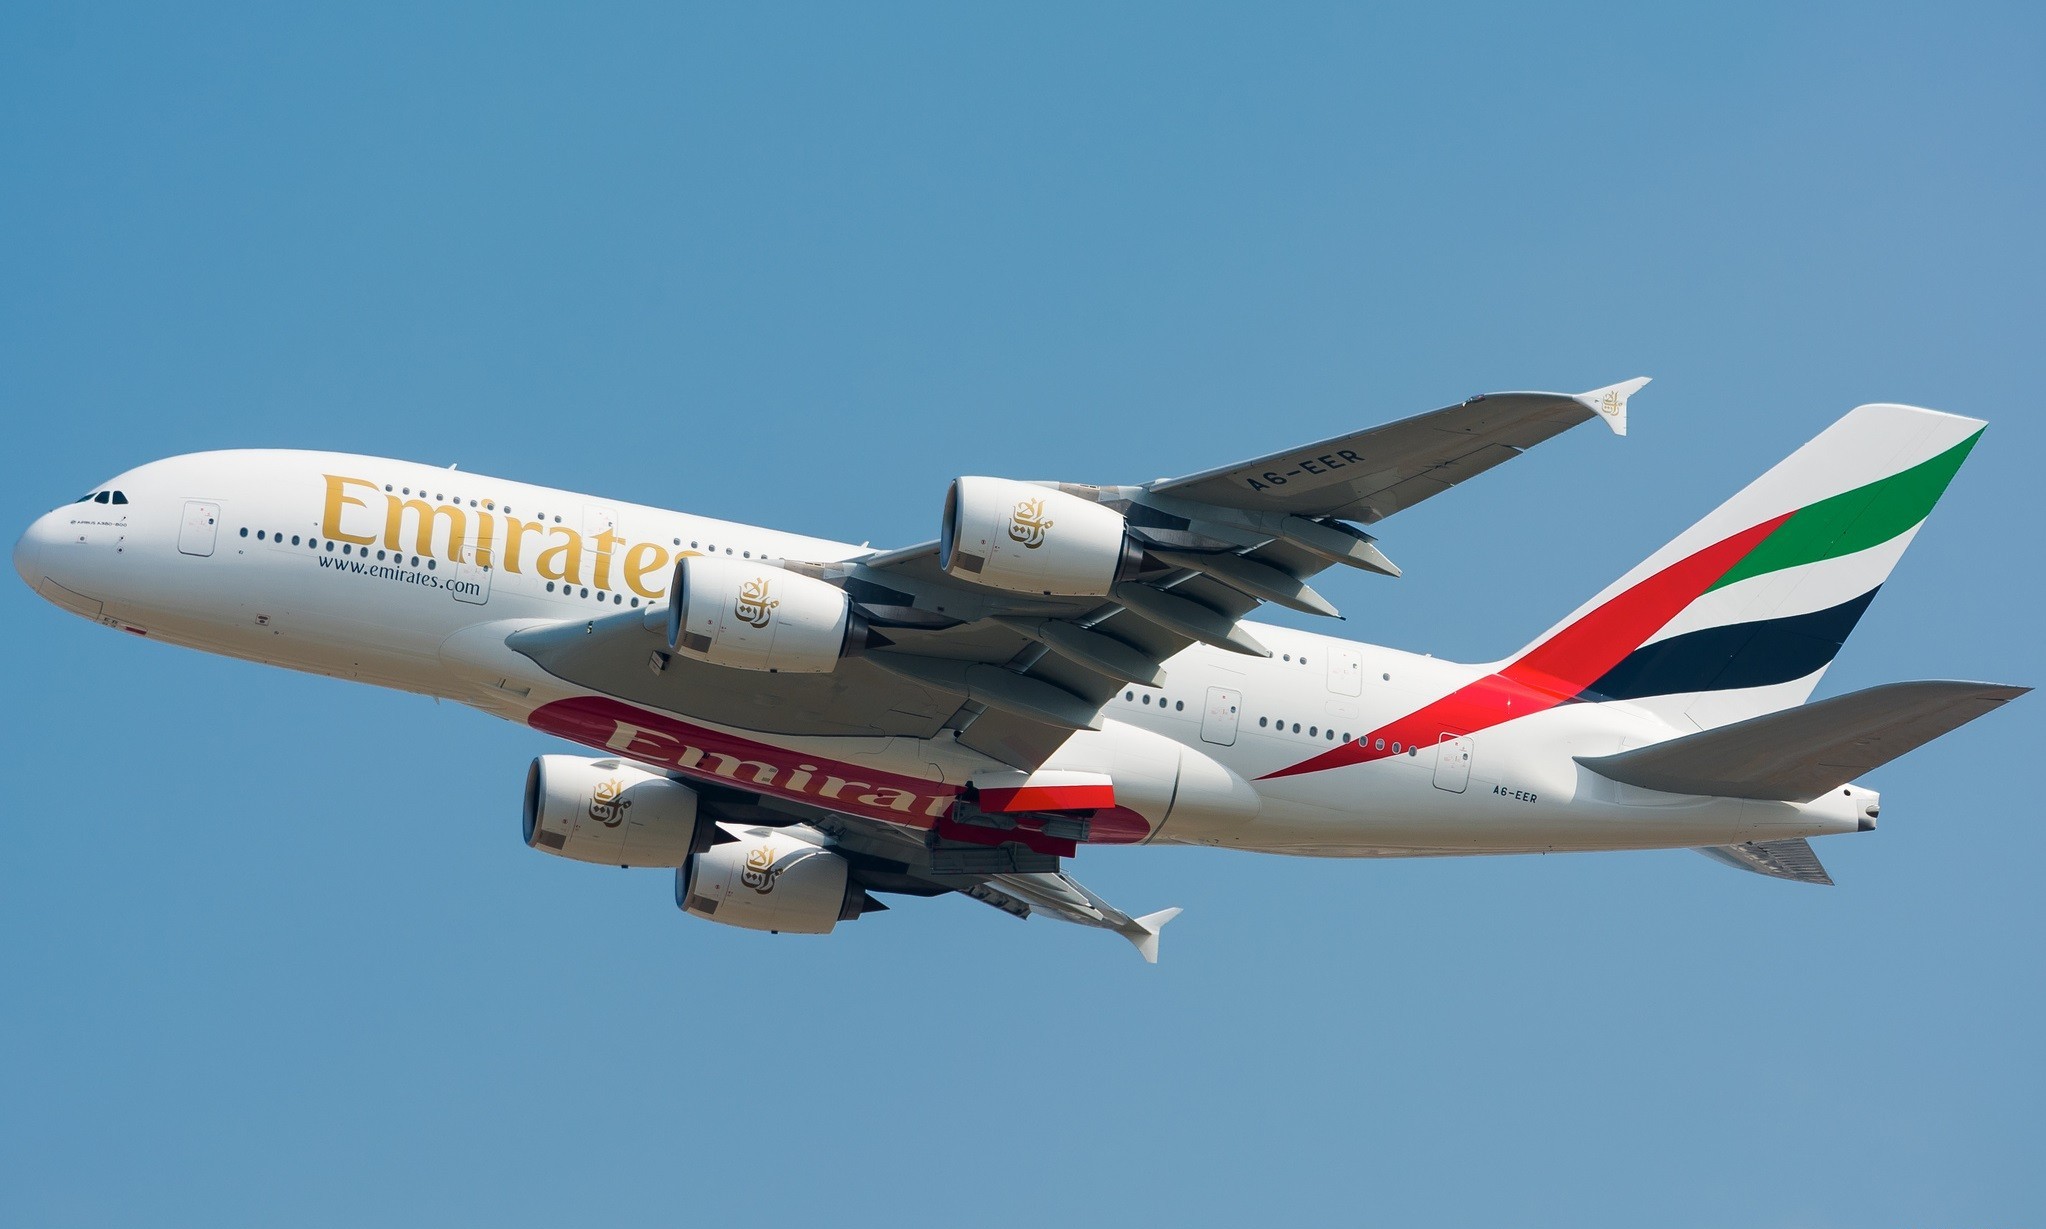 Emirates A380 Wallpaper Hd - HD Wallpaper 